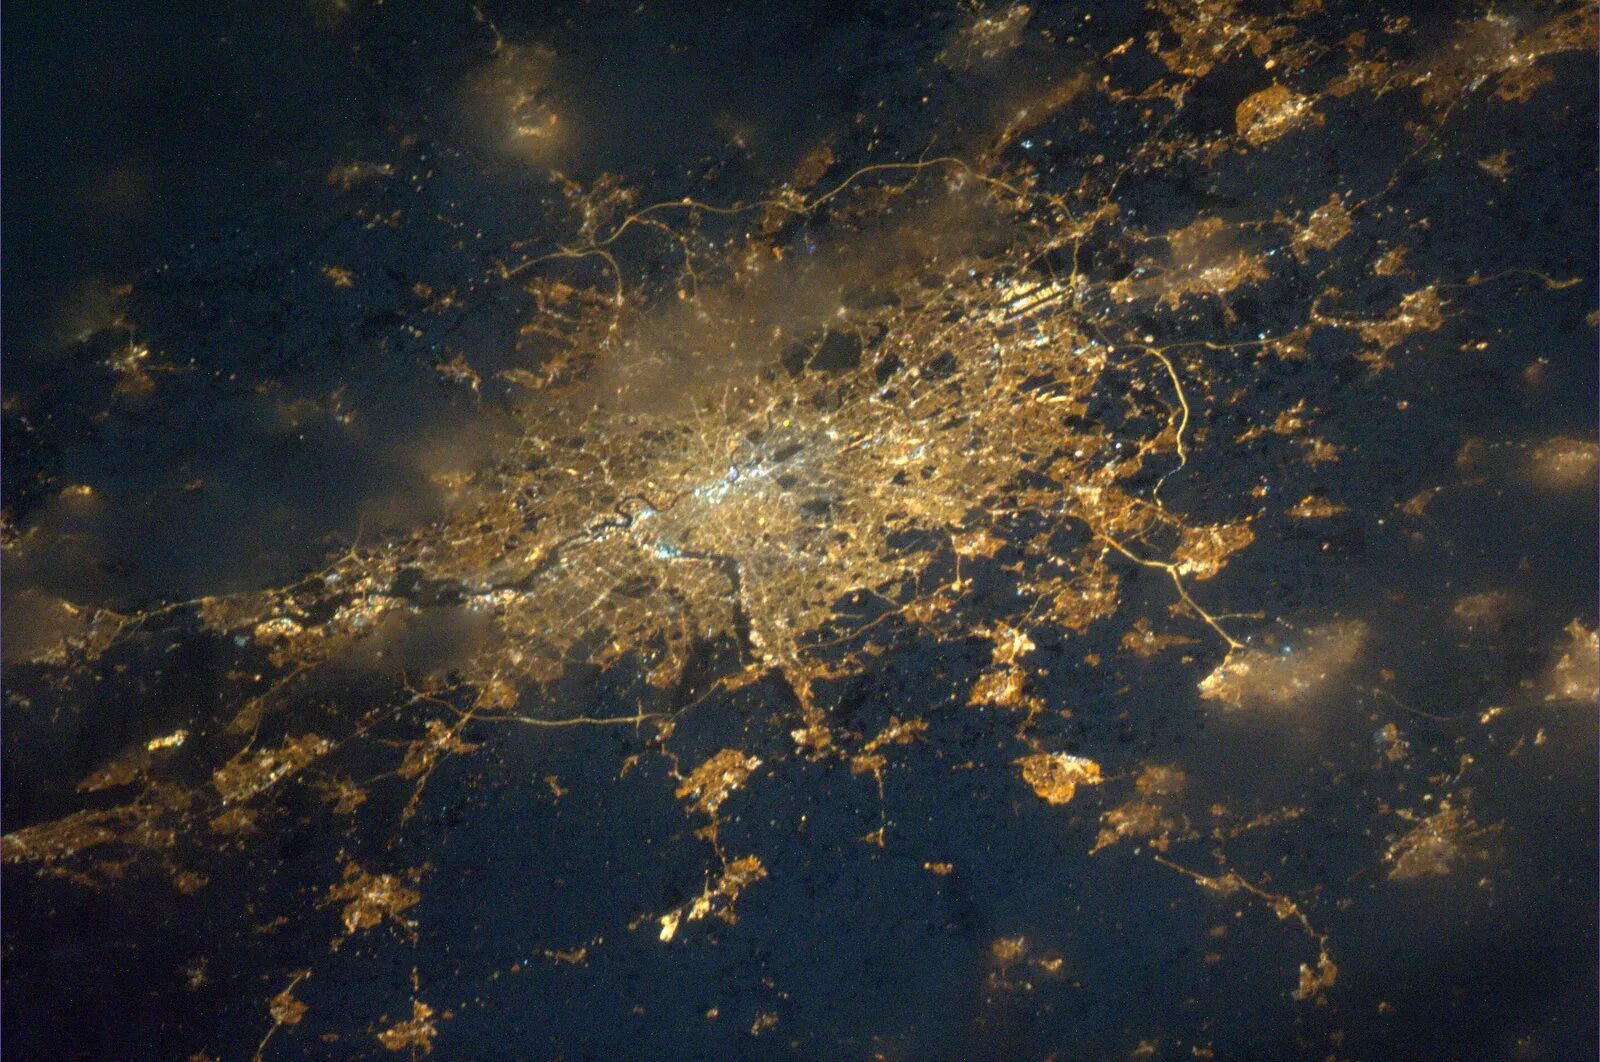 Снимки из космоса в реальном времени высокого. Ночной вид из космоса. Вид земли из космоса ночью. Россия из космоса. Ночные снимки земли из космоса.